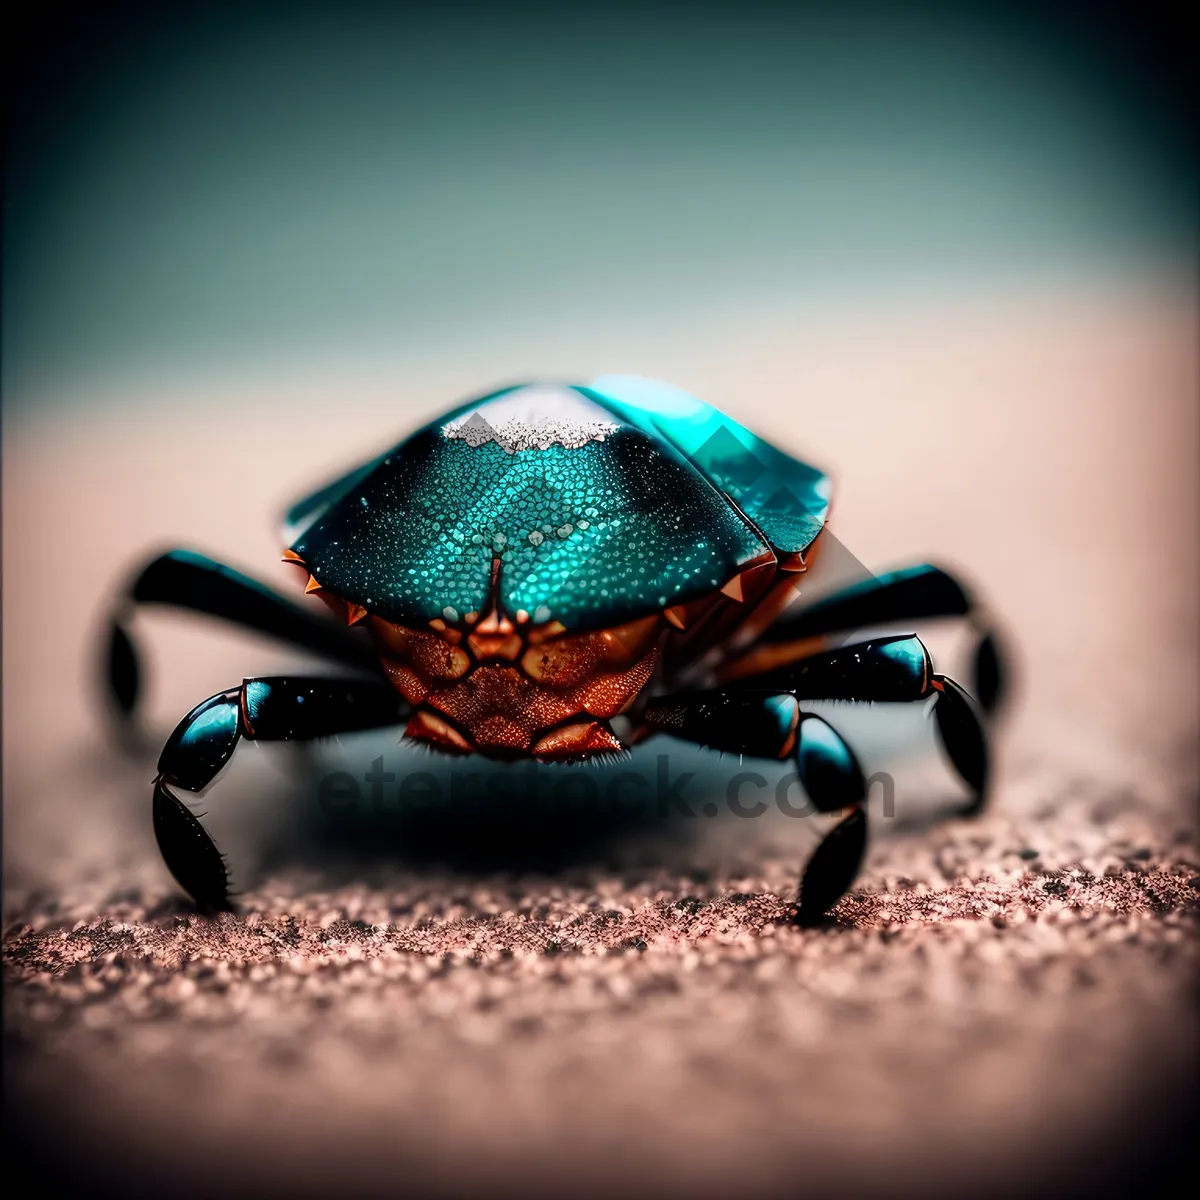 Picture of Black Leaf Beetle Ladybug - Invertebrate Arthropod Image